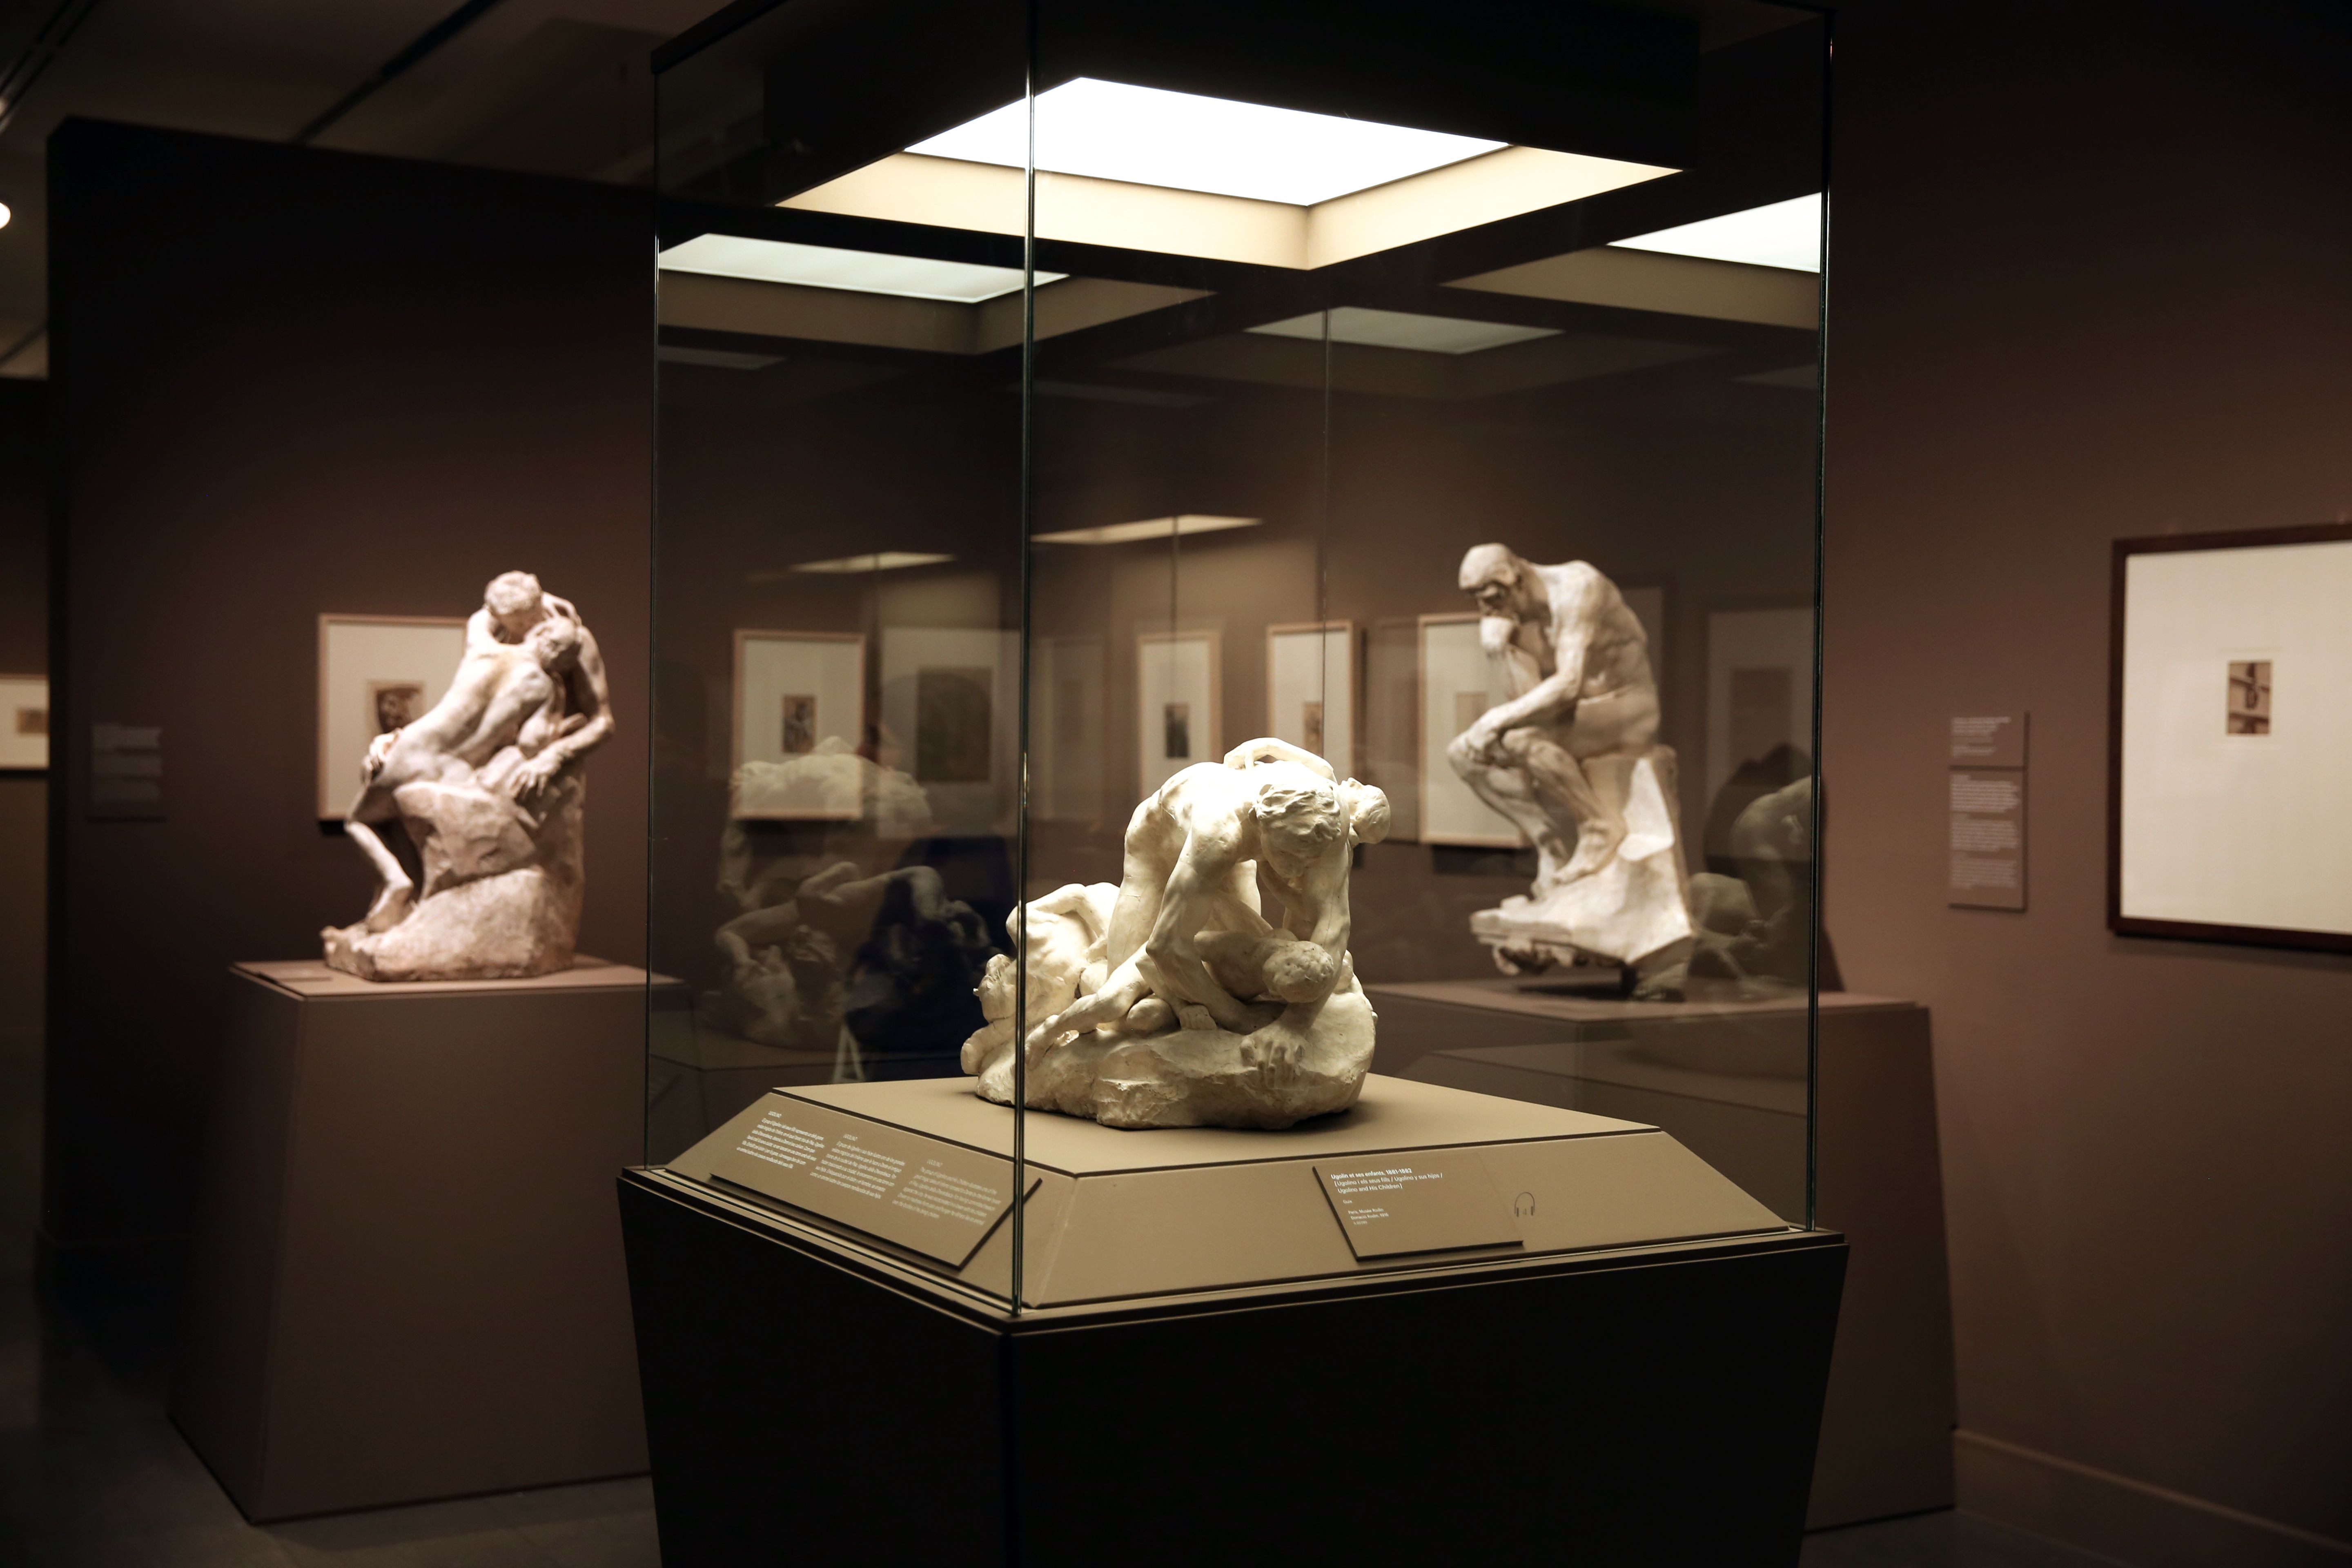 El infierno de Rodin, Exhibition, MAPFRE Foundation,  Casa Garriga Nogués, Barcelona: until 21 January 2018